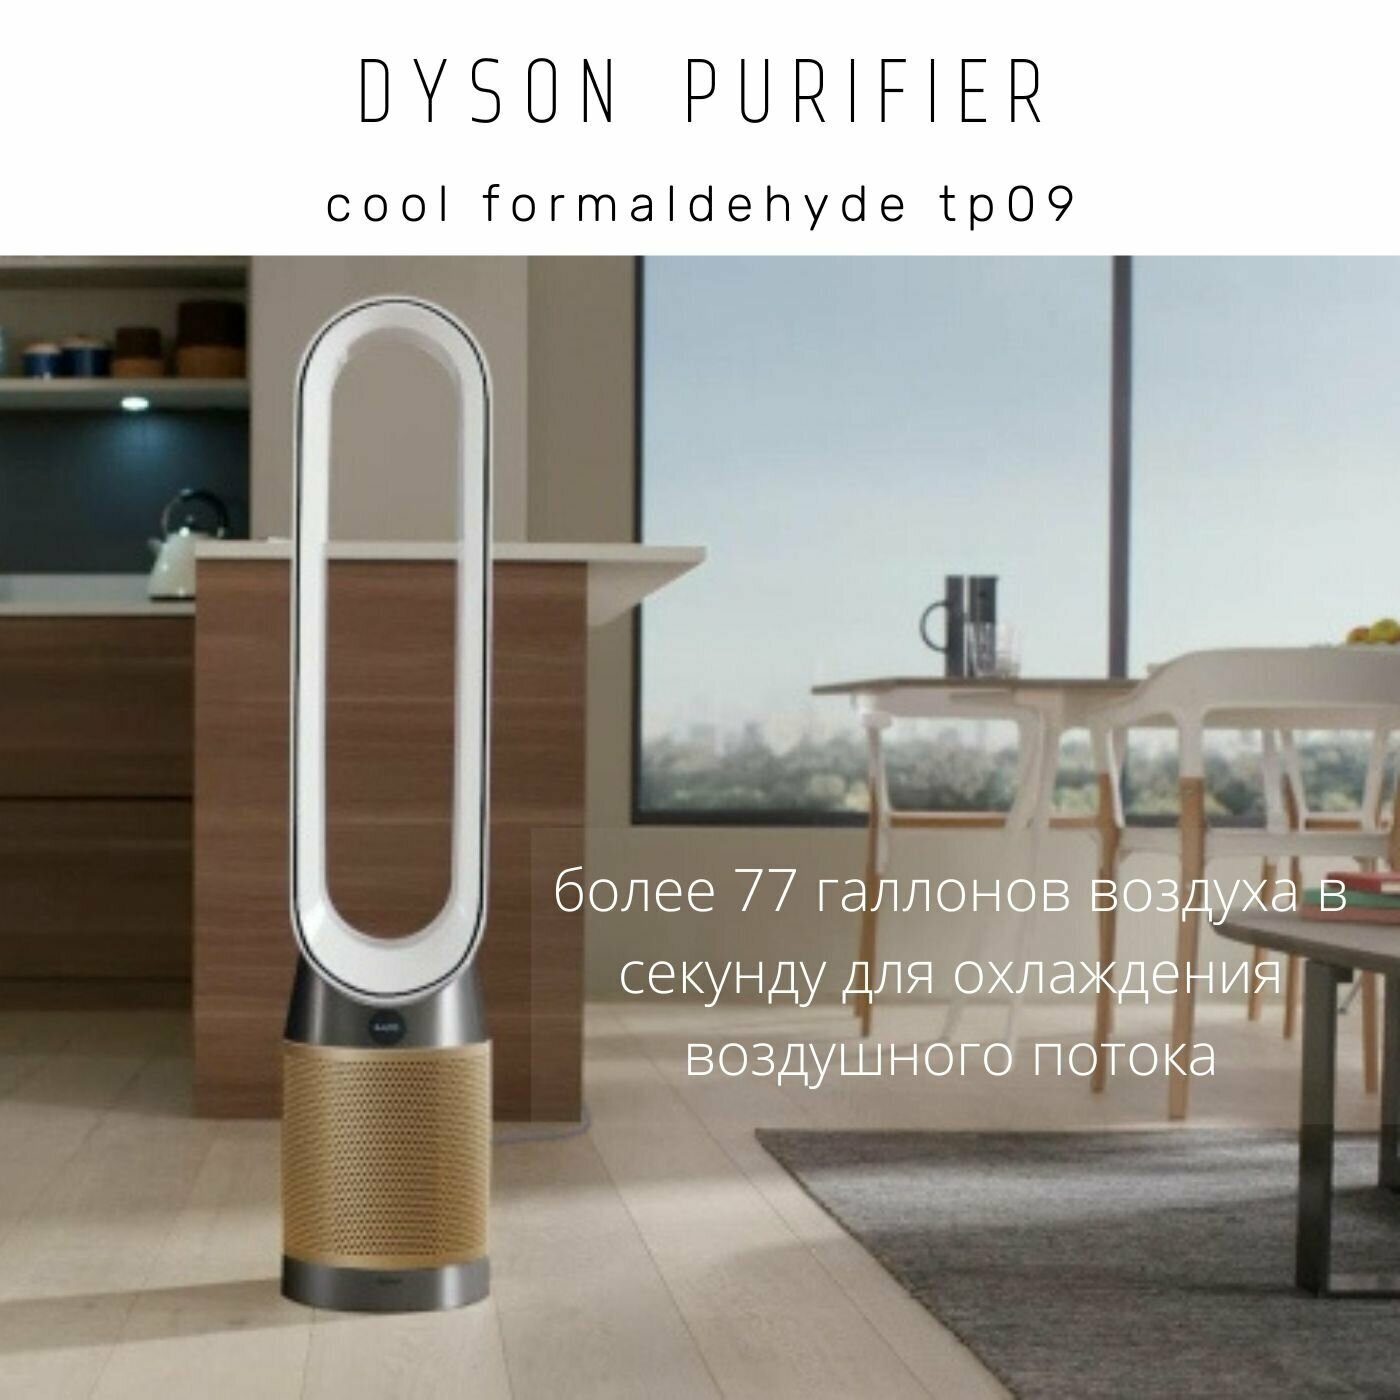 Очиститель воздуха Dyson TP09 Purifier Cool Formaldehyde